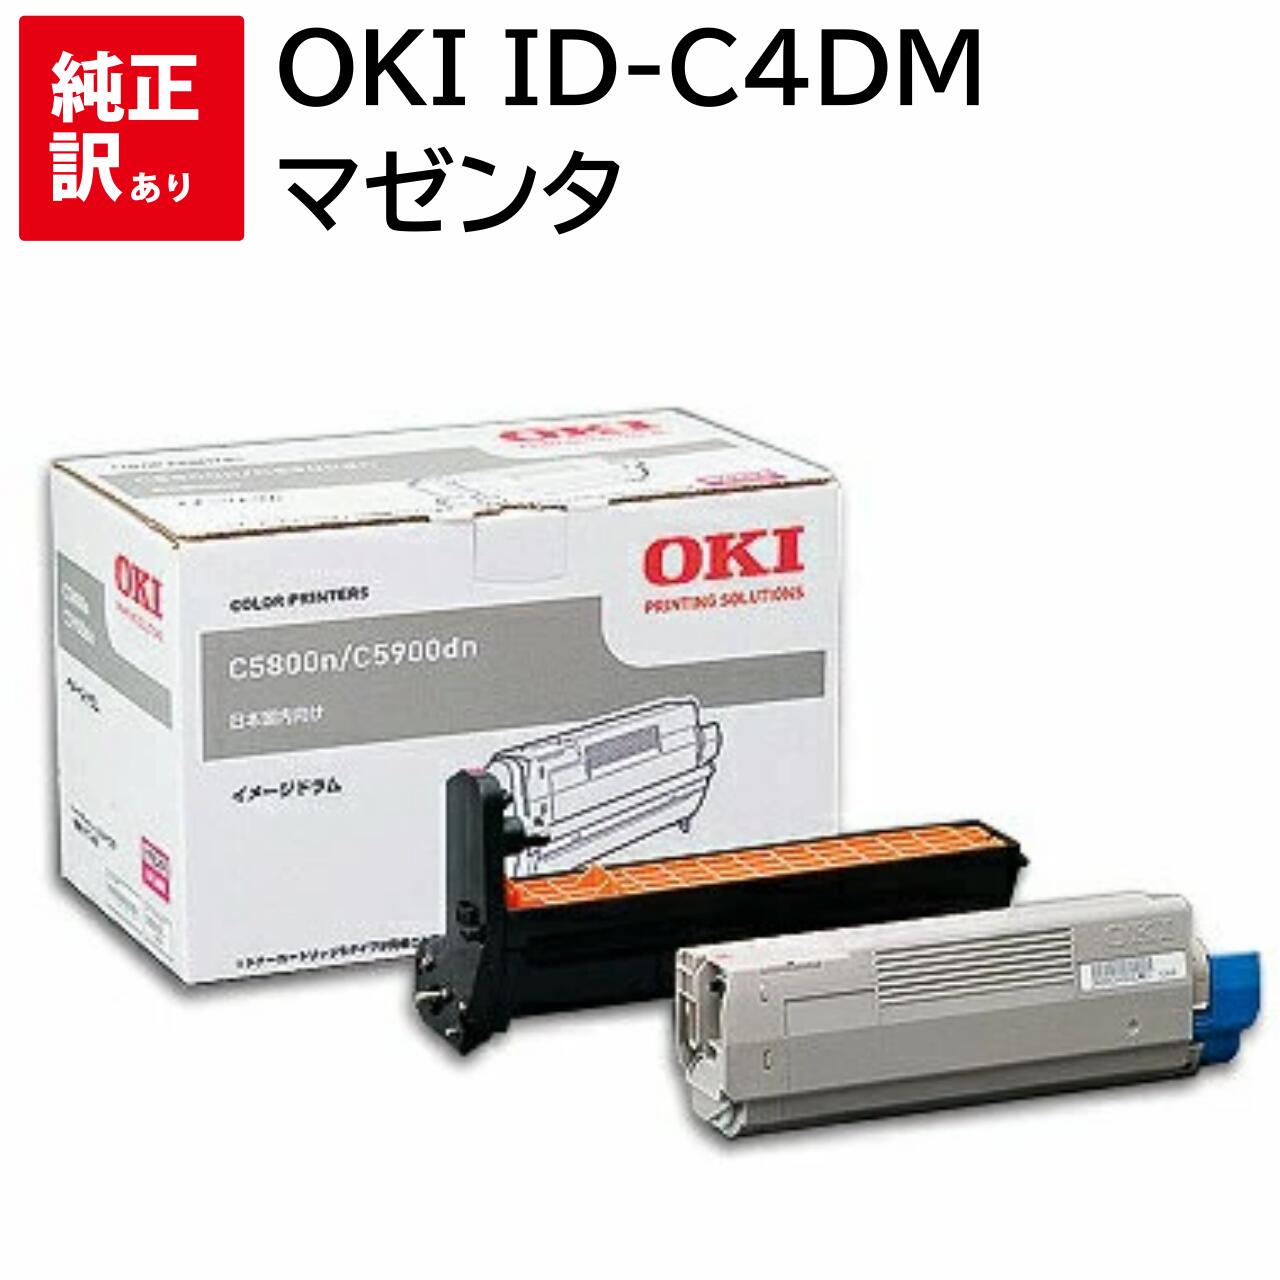 再入荷 OKI ID-C3HM イメージドラム マゼンタ (20,000枚) OK-DM910MGJ